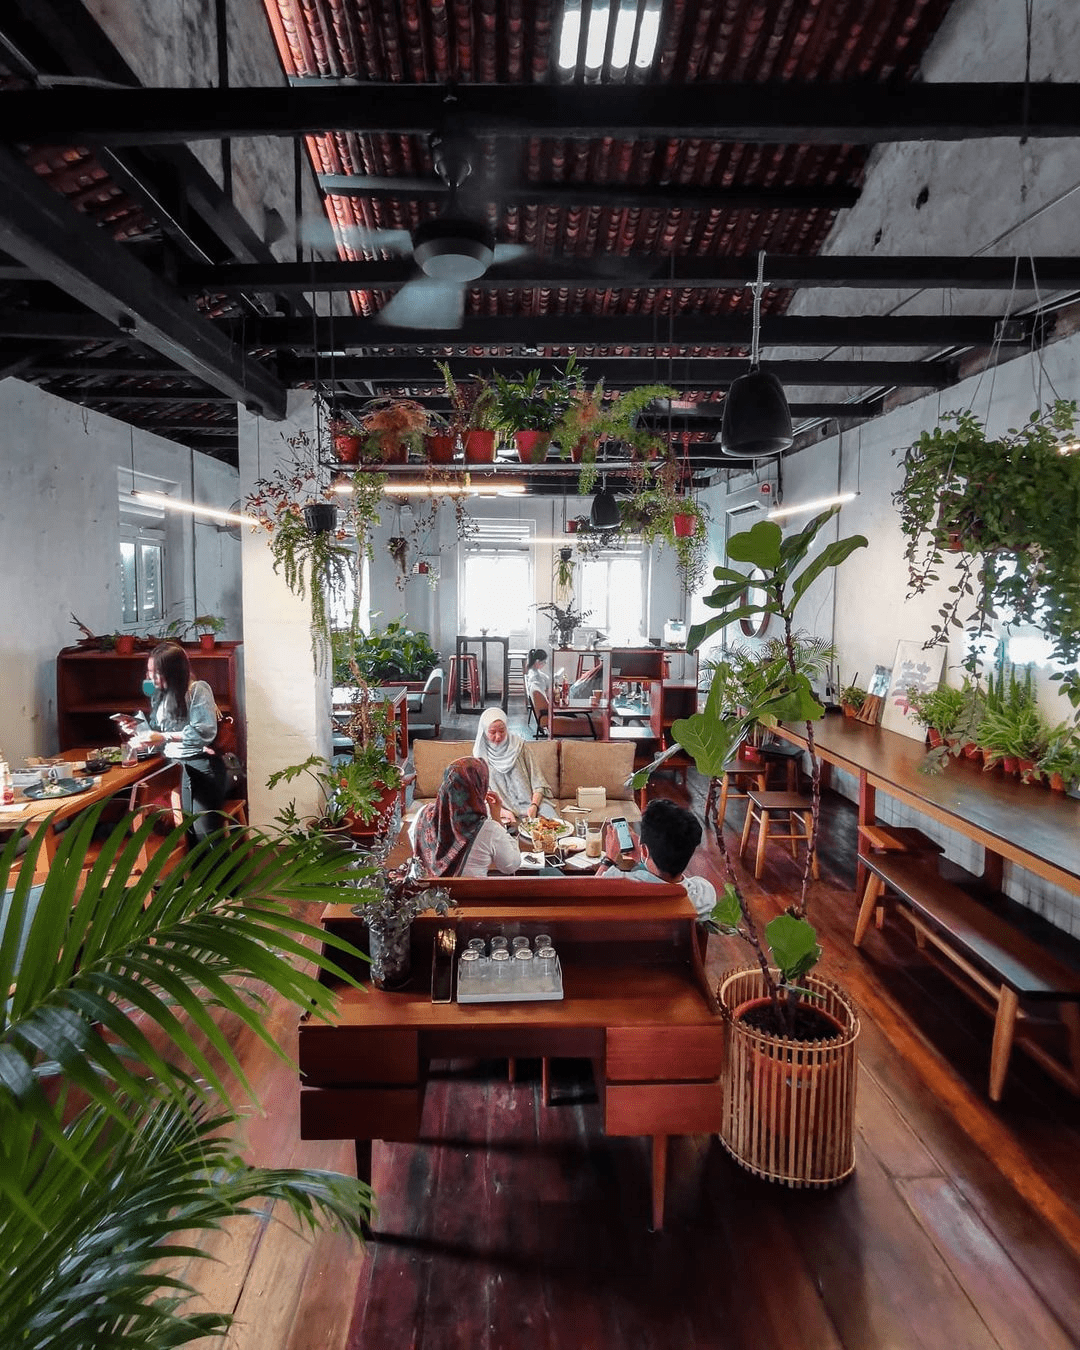 Cafes in Melaka - The Upper